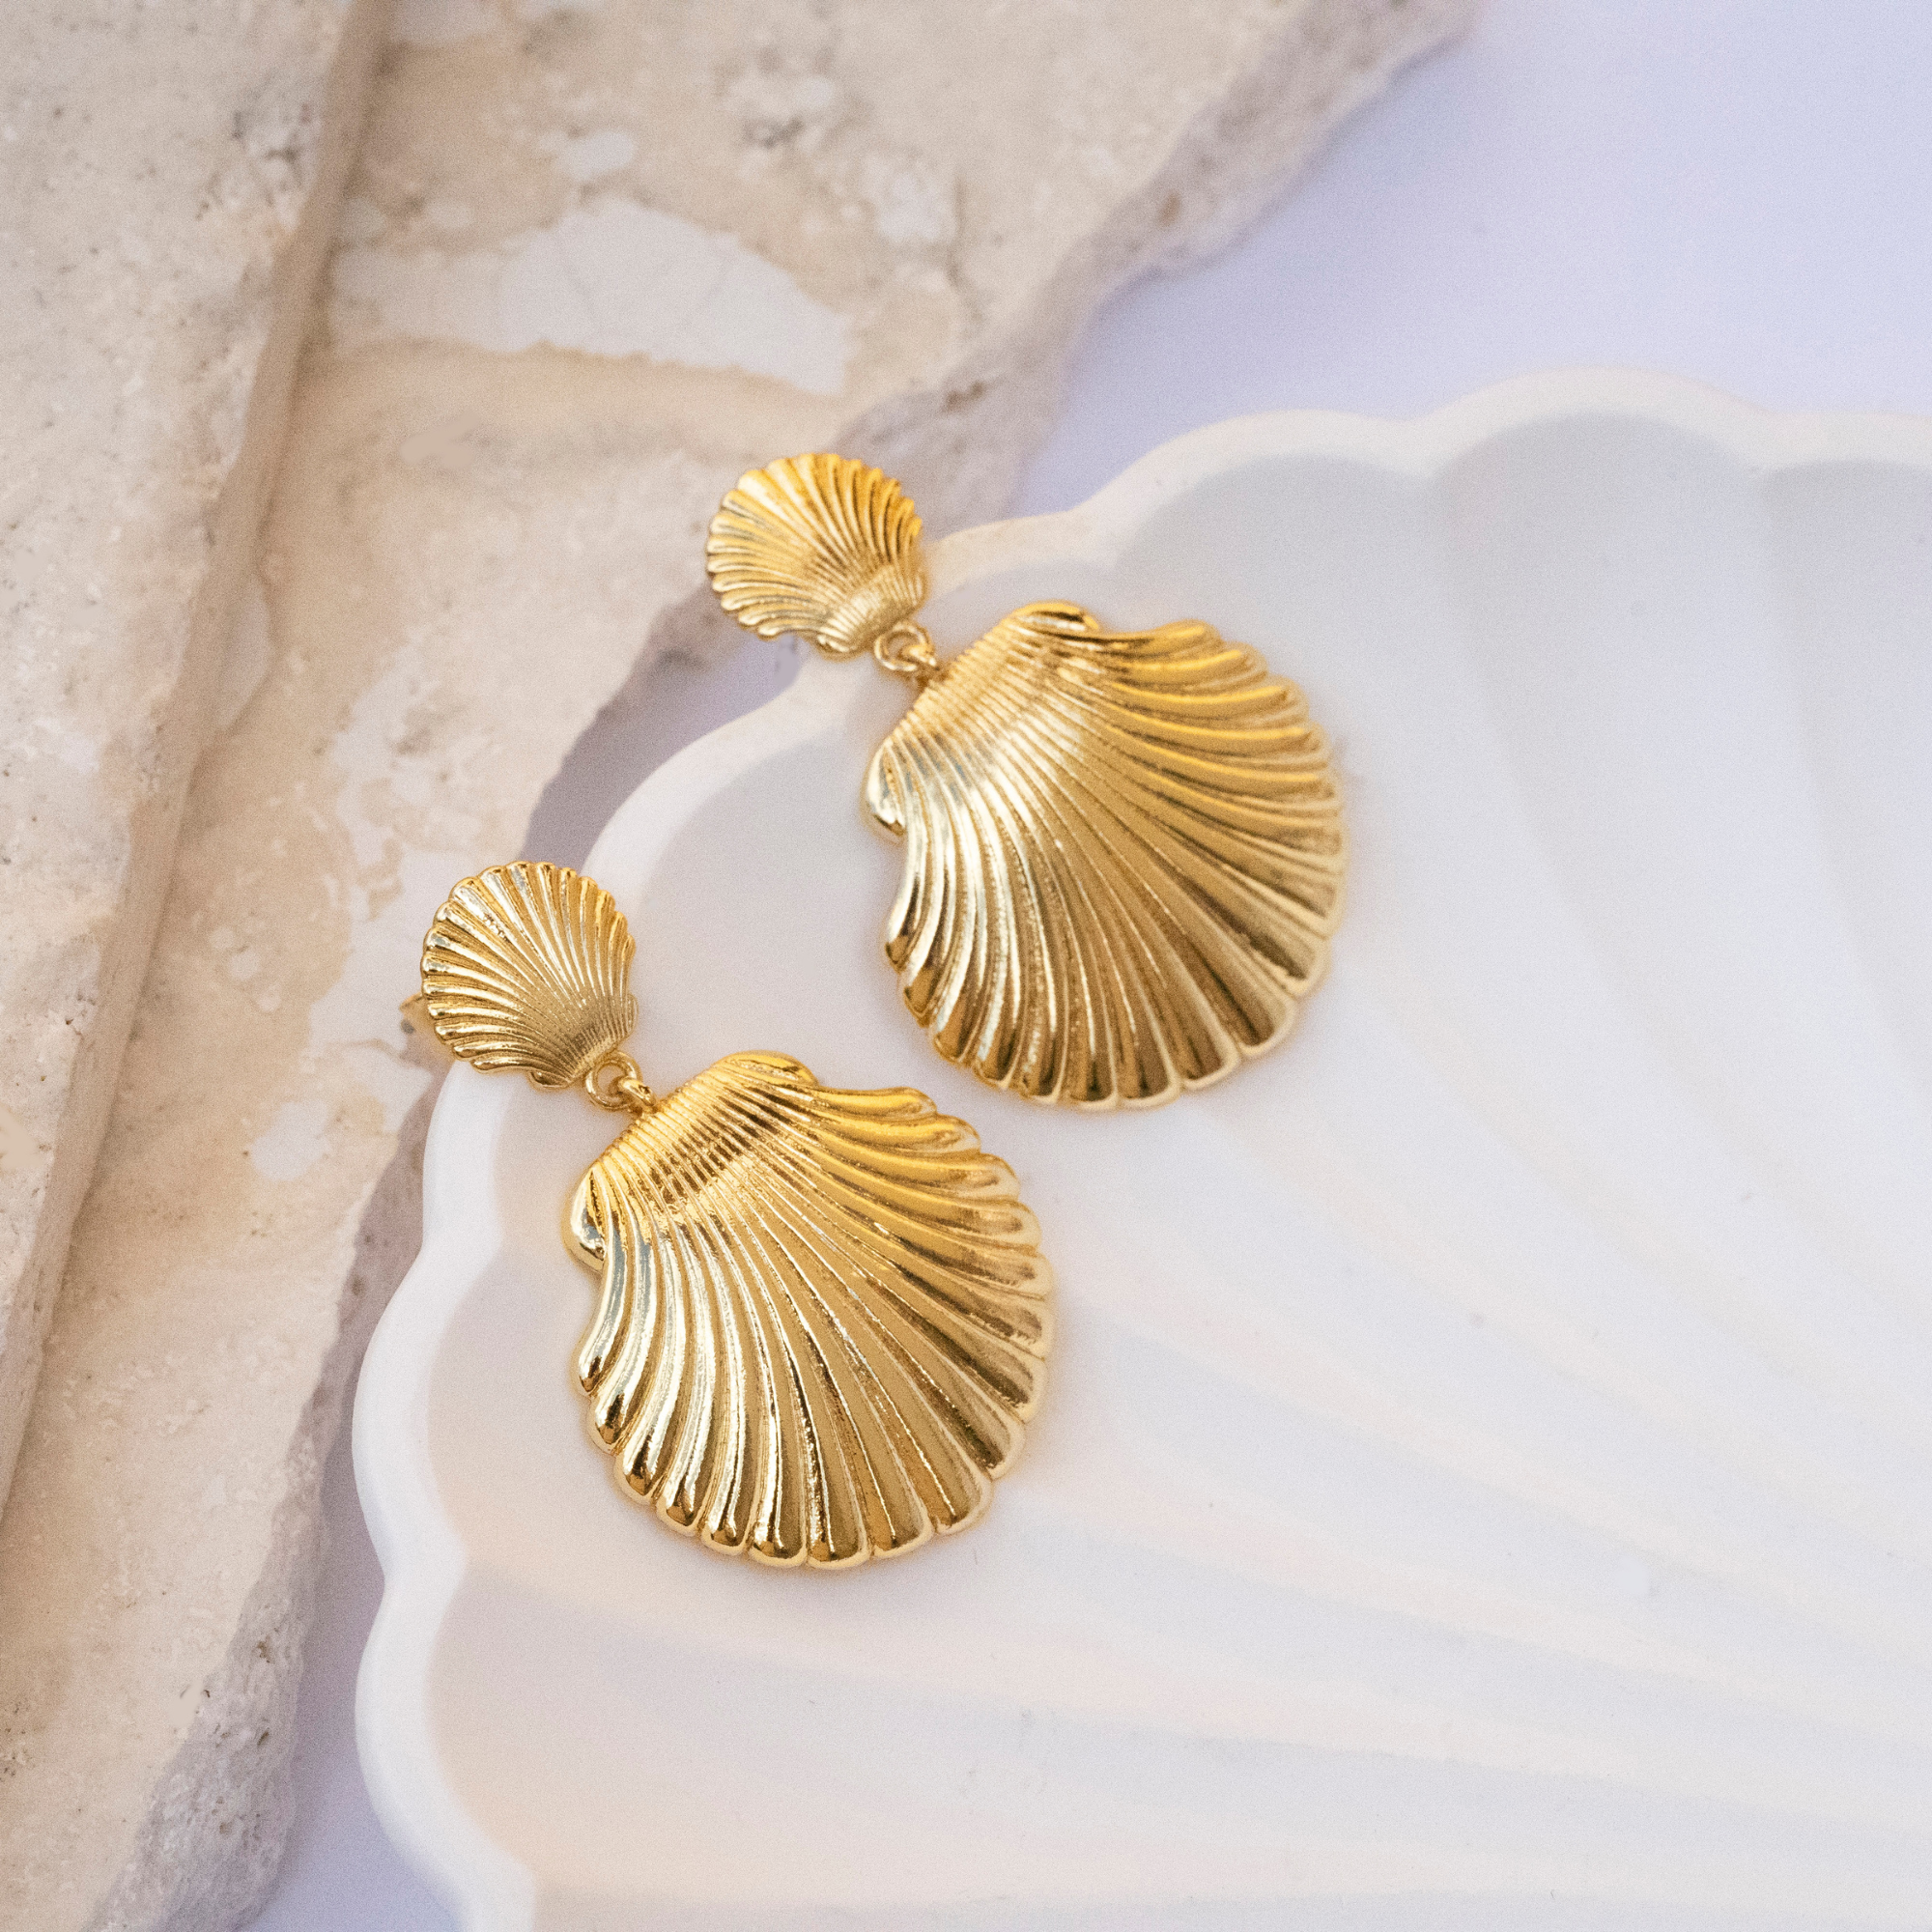 Golden shell earrings